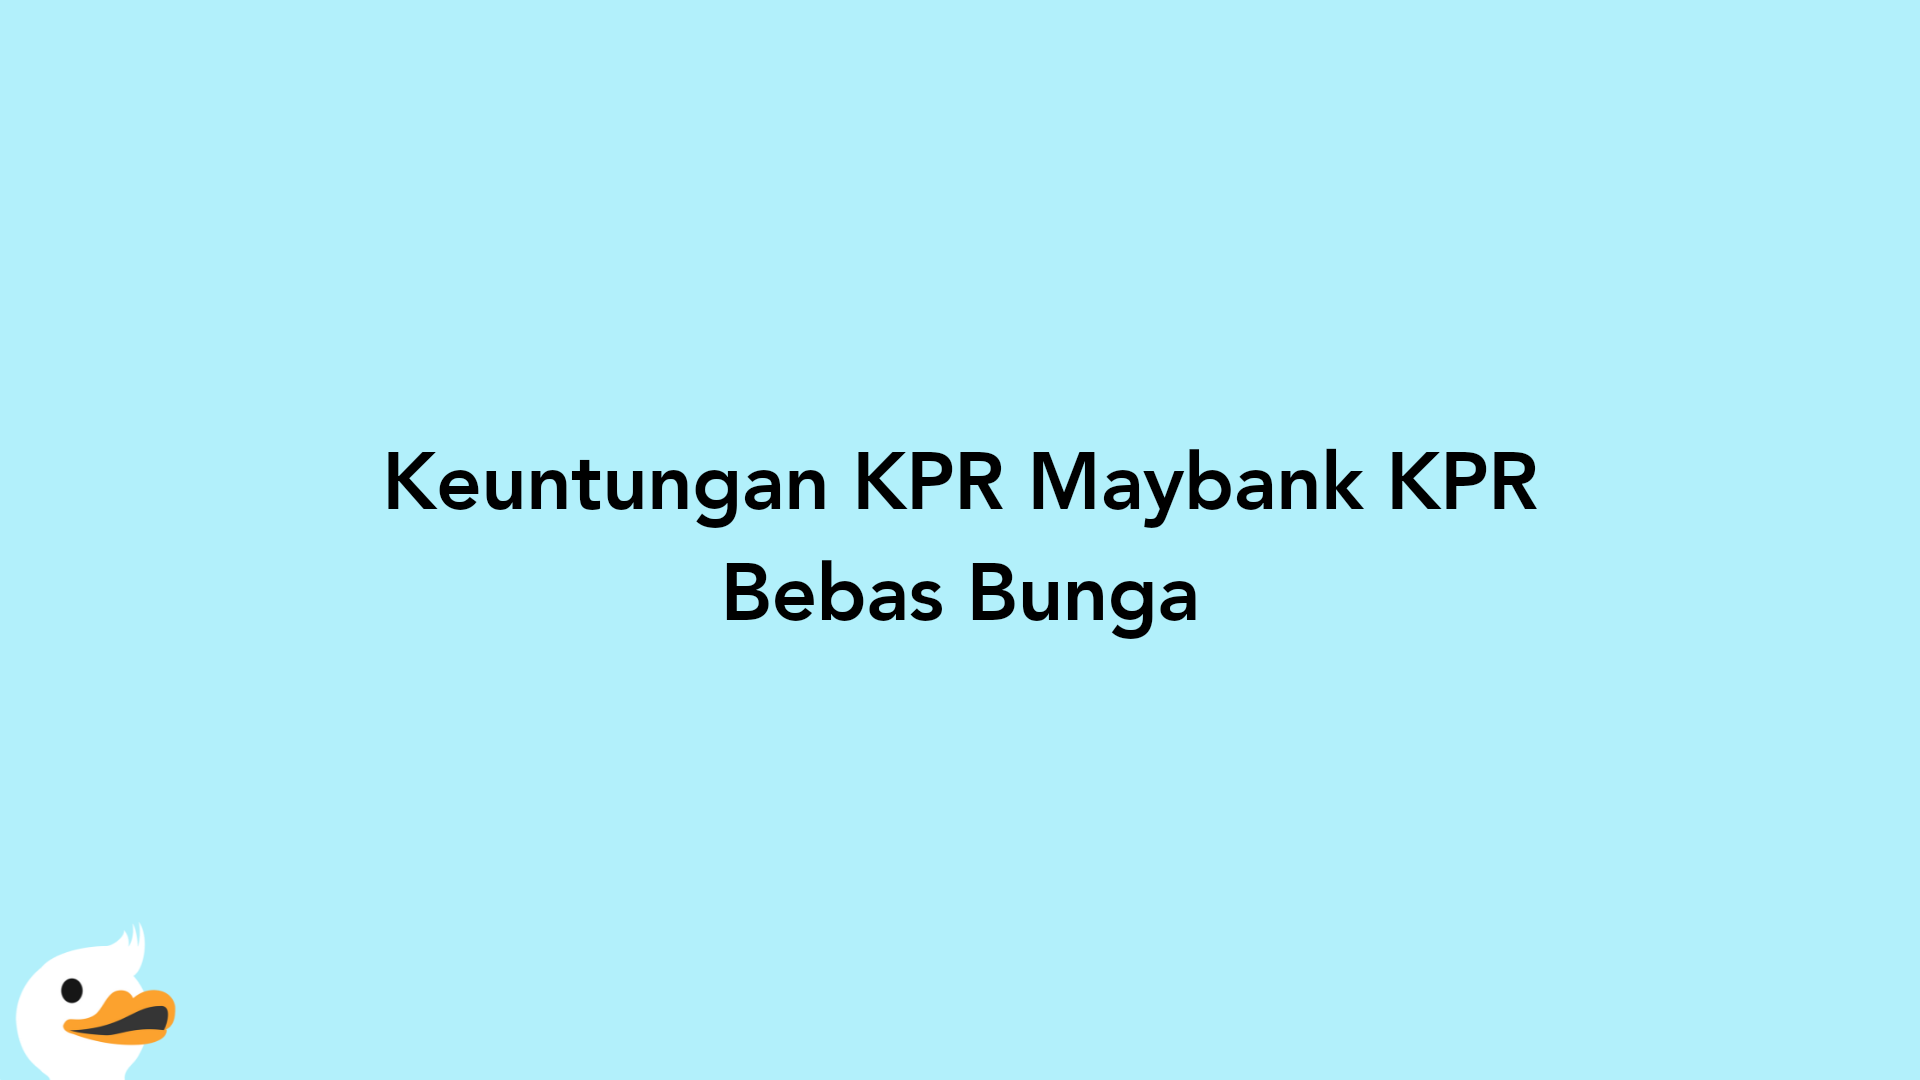 Keuntungan KPR Maybank KPR Bebas Bunga